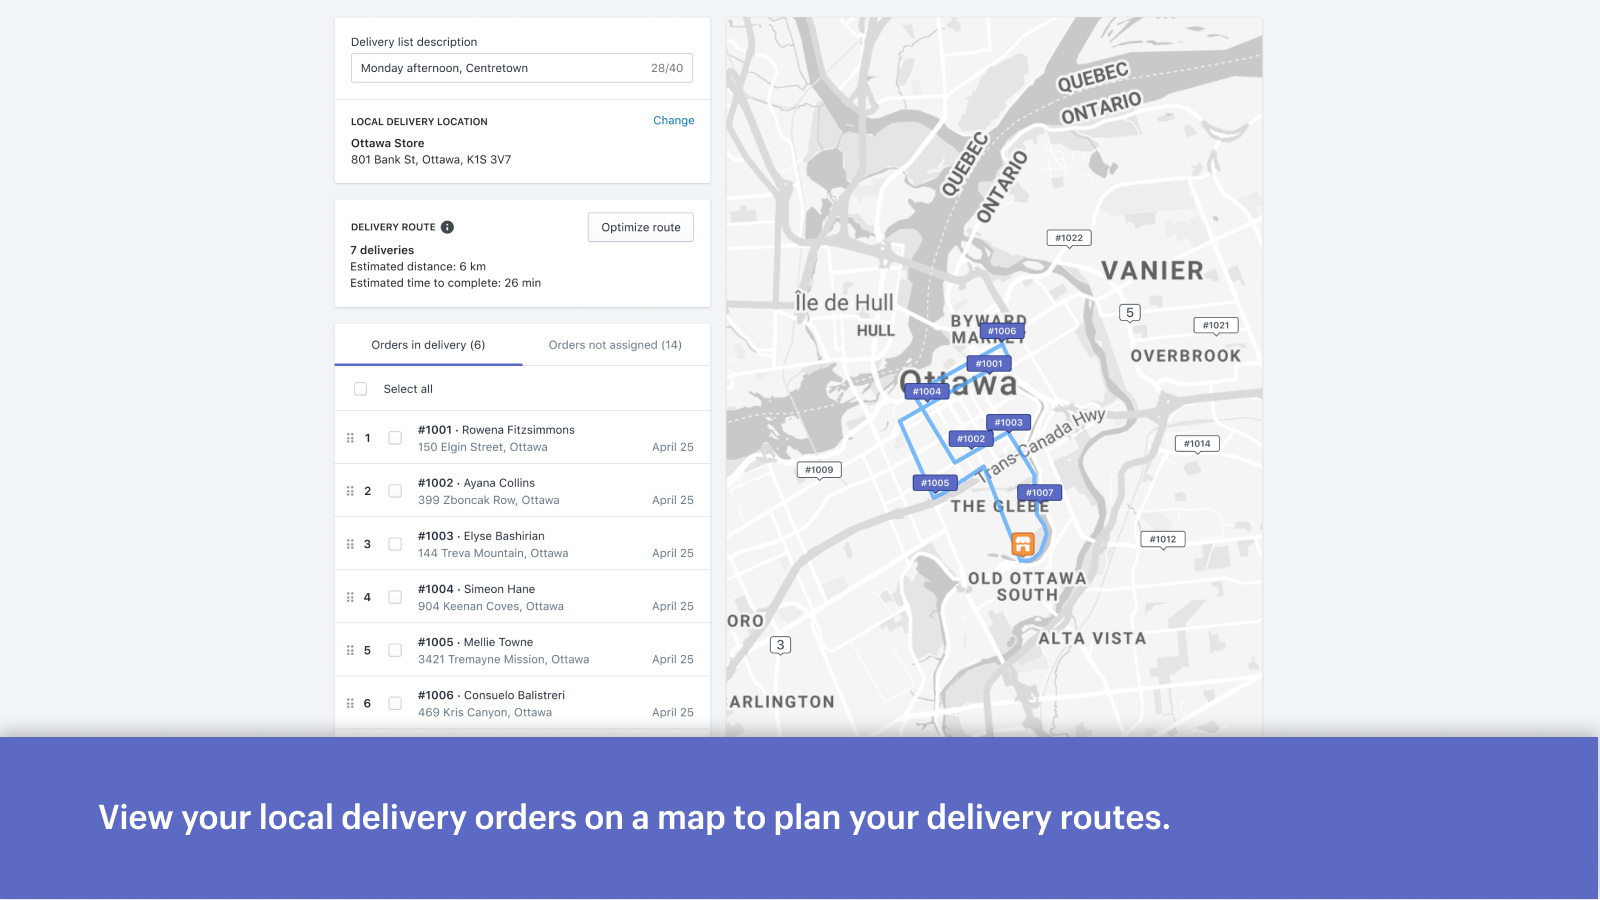 Visa dina lokala leveransorder på en karta för att planera dina leveranser